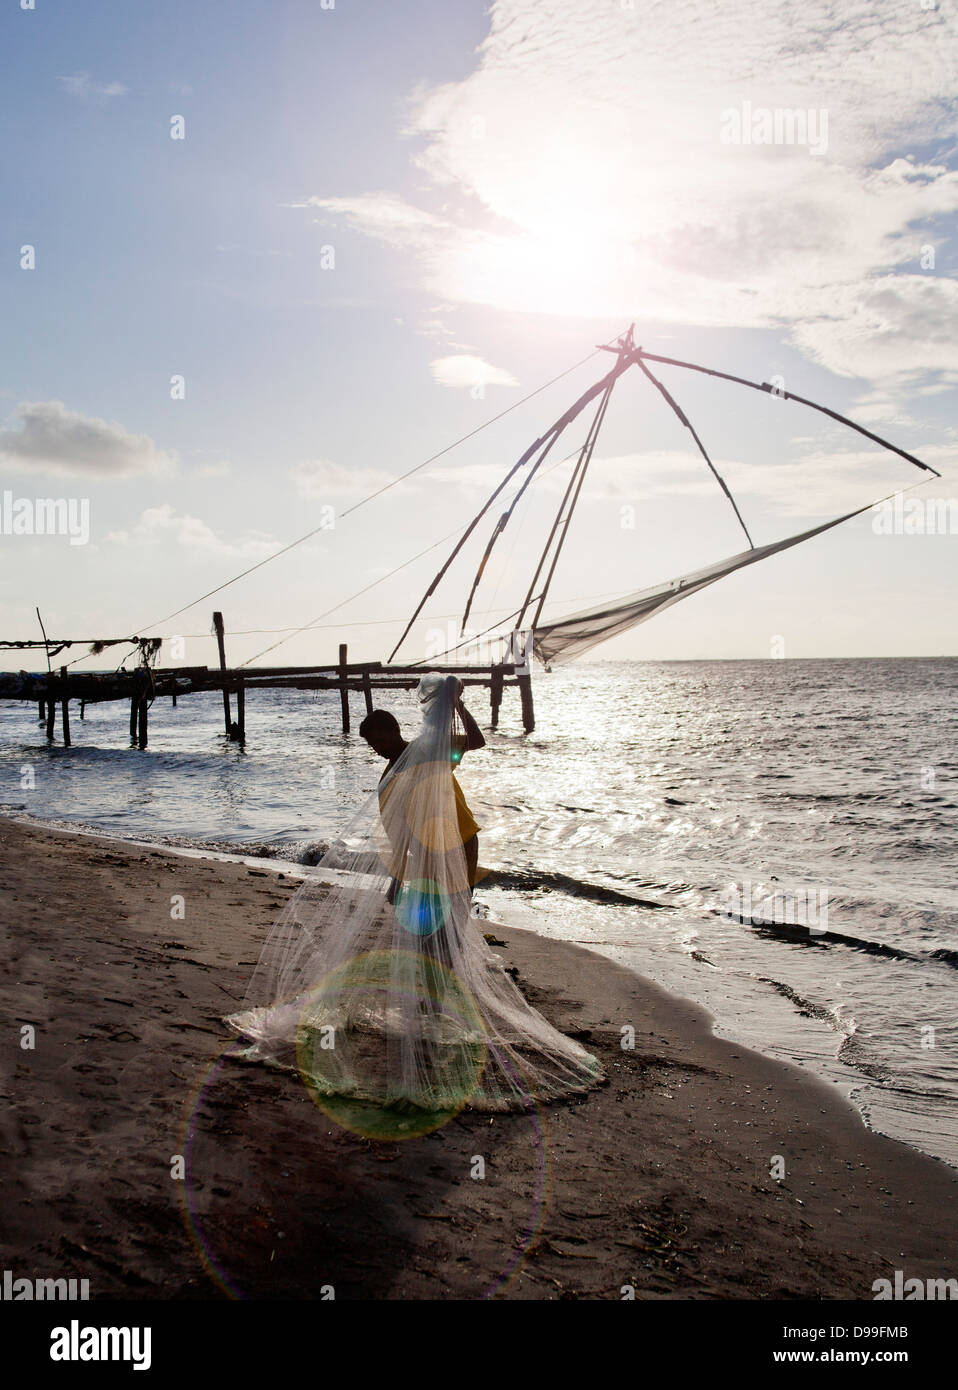 Pescador mantiene una red de pesca en la playa, Cochin, Kerala, India Foto de stock